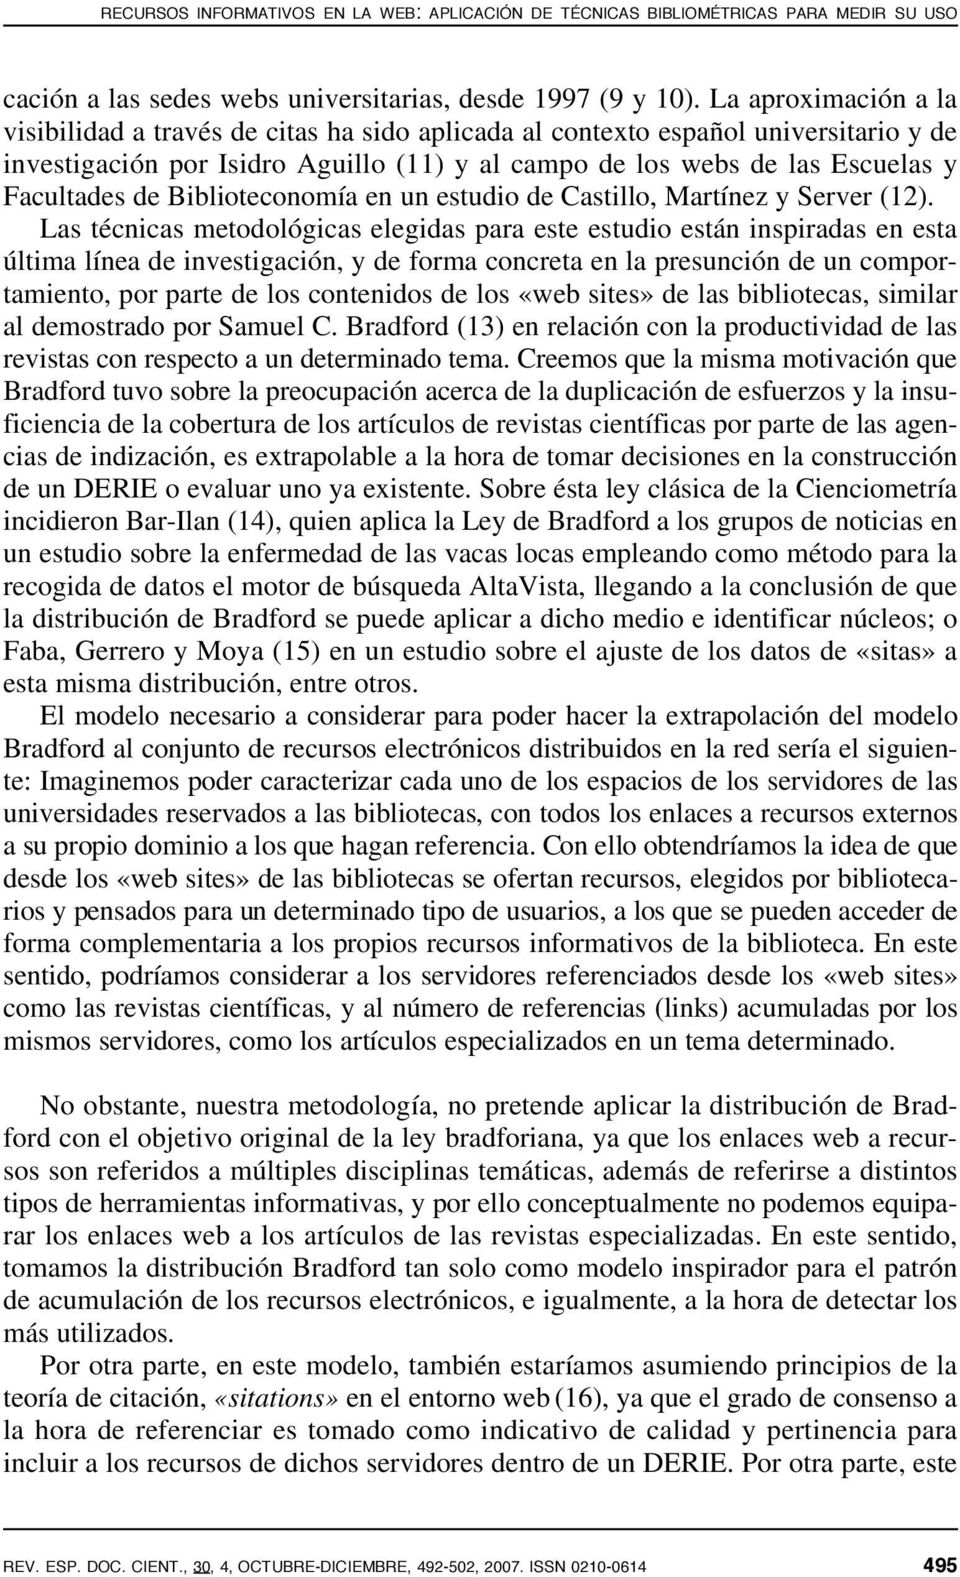 Biblioteconomía en un estudio de Castillo, Martínez y Server (12).